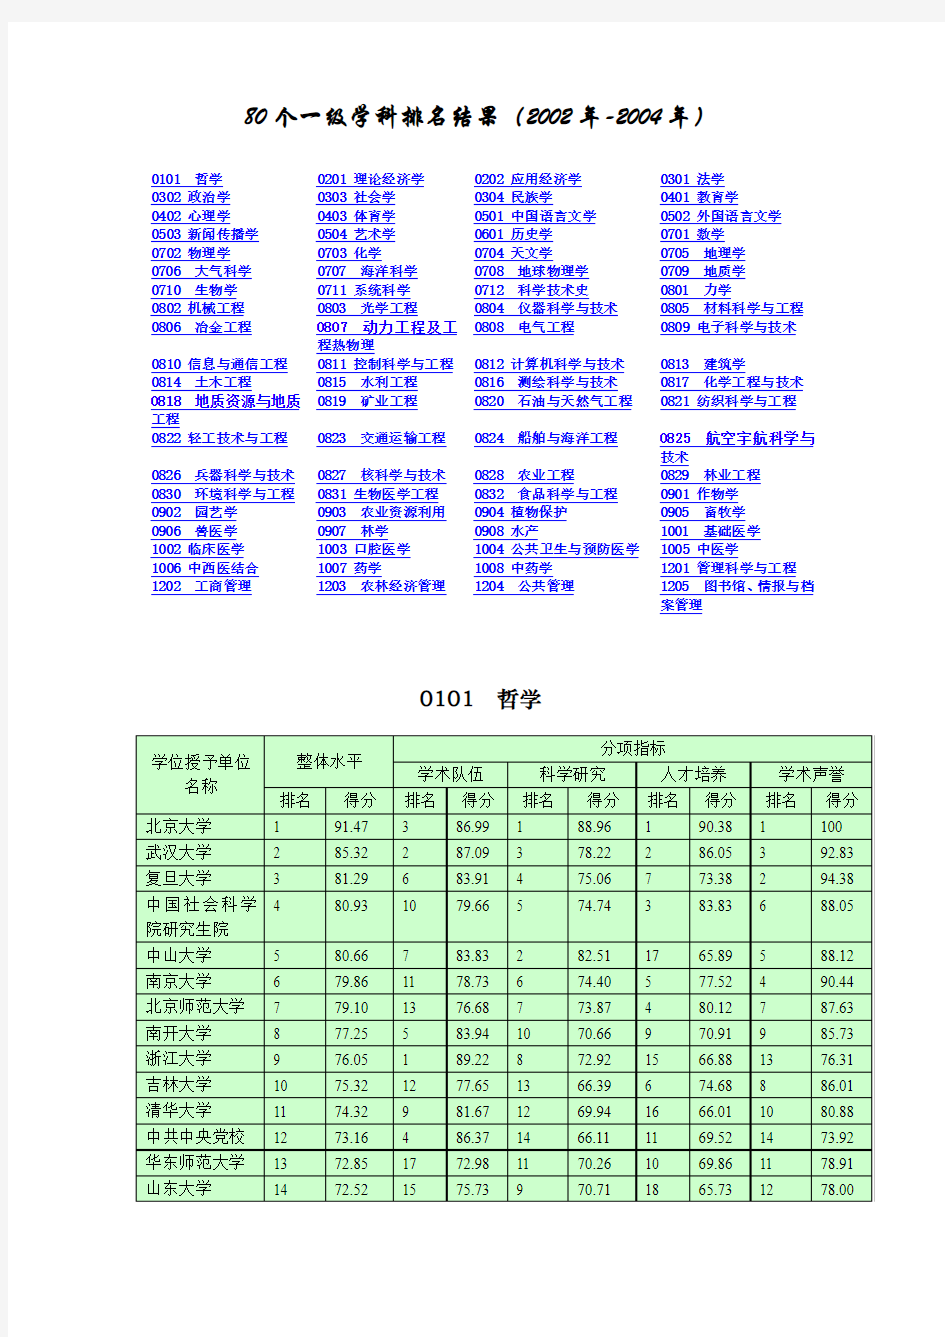 80个一级学科排名结果(2002年-2004年)